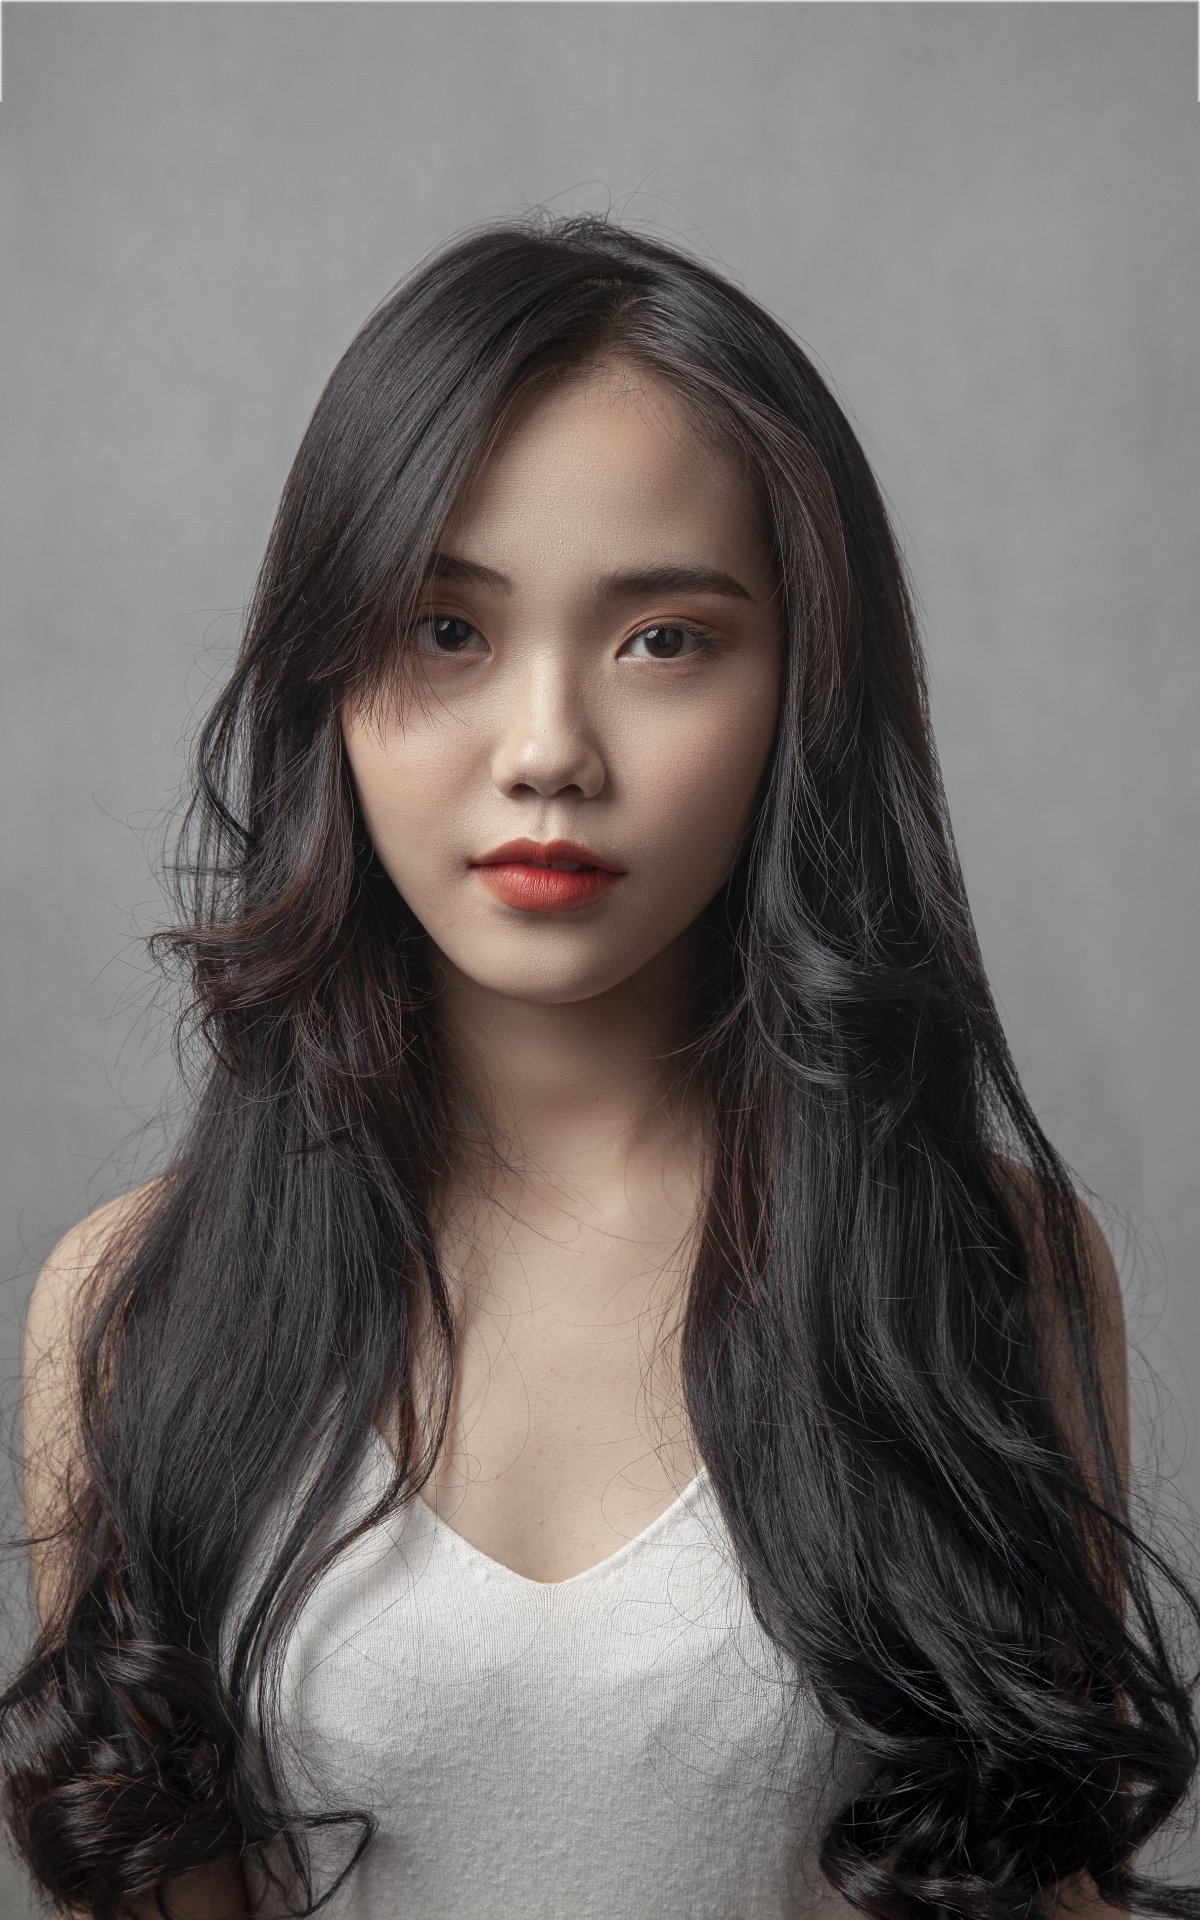 亚洲美女烫发发型图片,高清图片